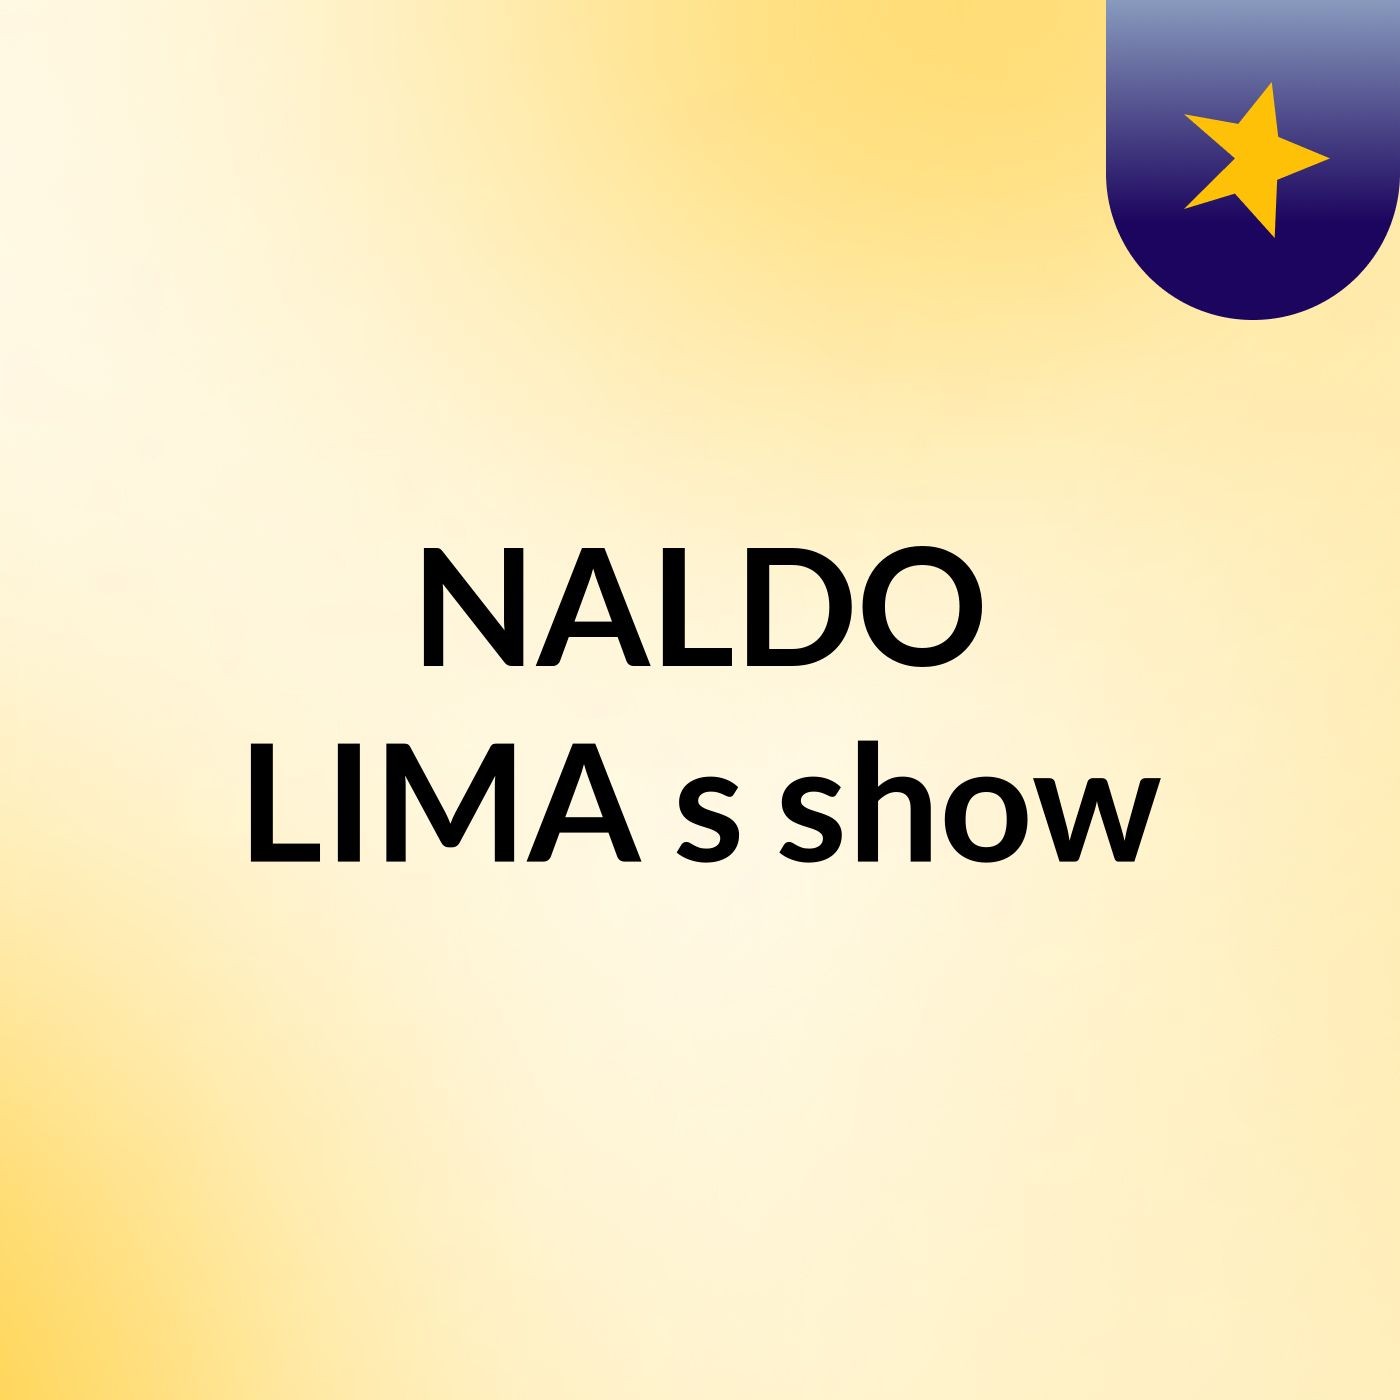 NALDO LIMA's show